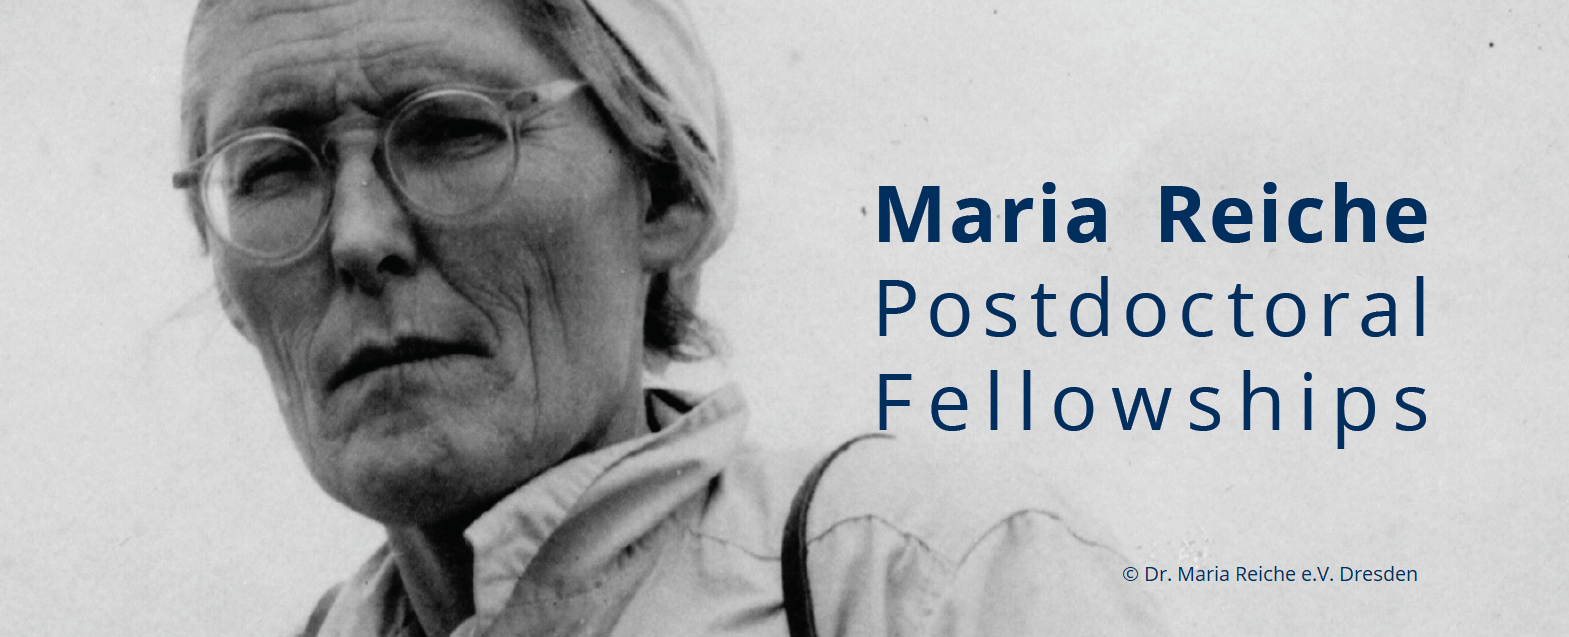 Maria Reiche fellowships